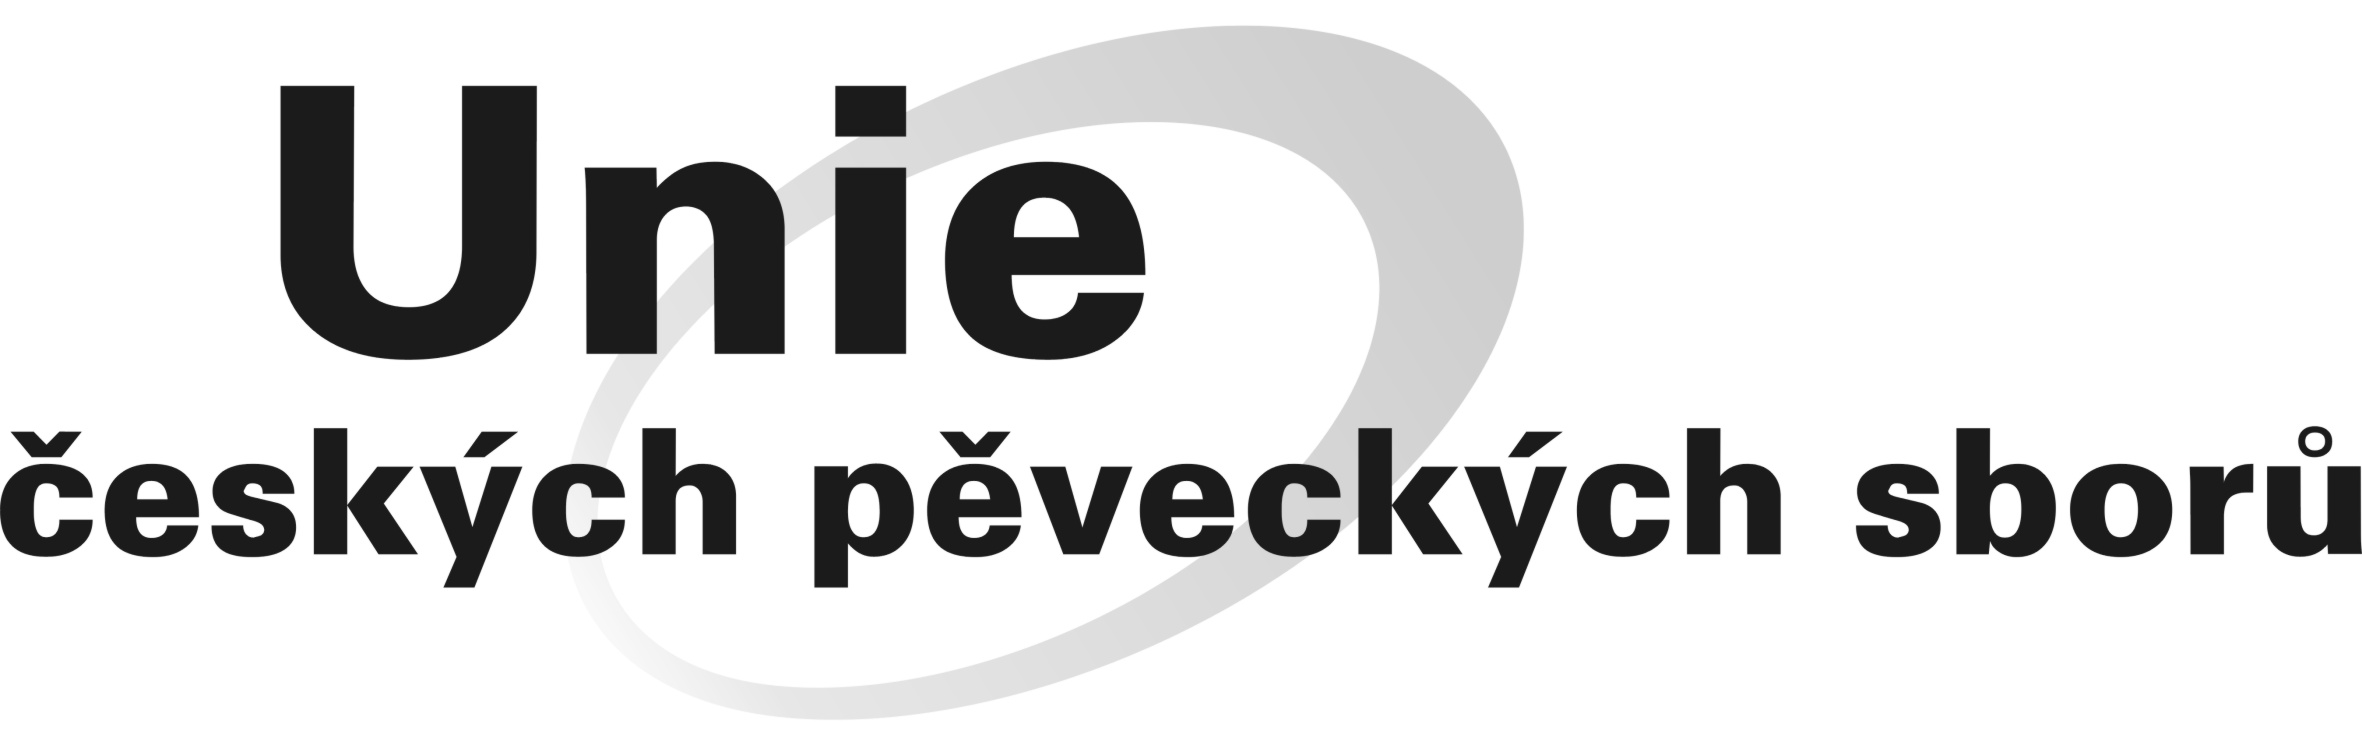 logo Unie českých pěveckých sborů